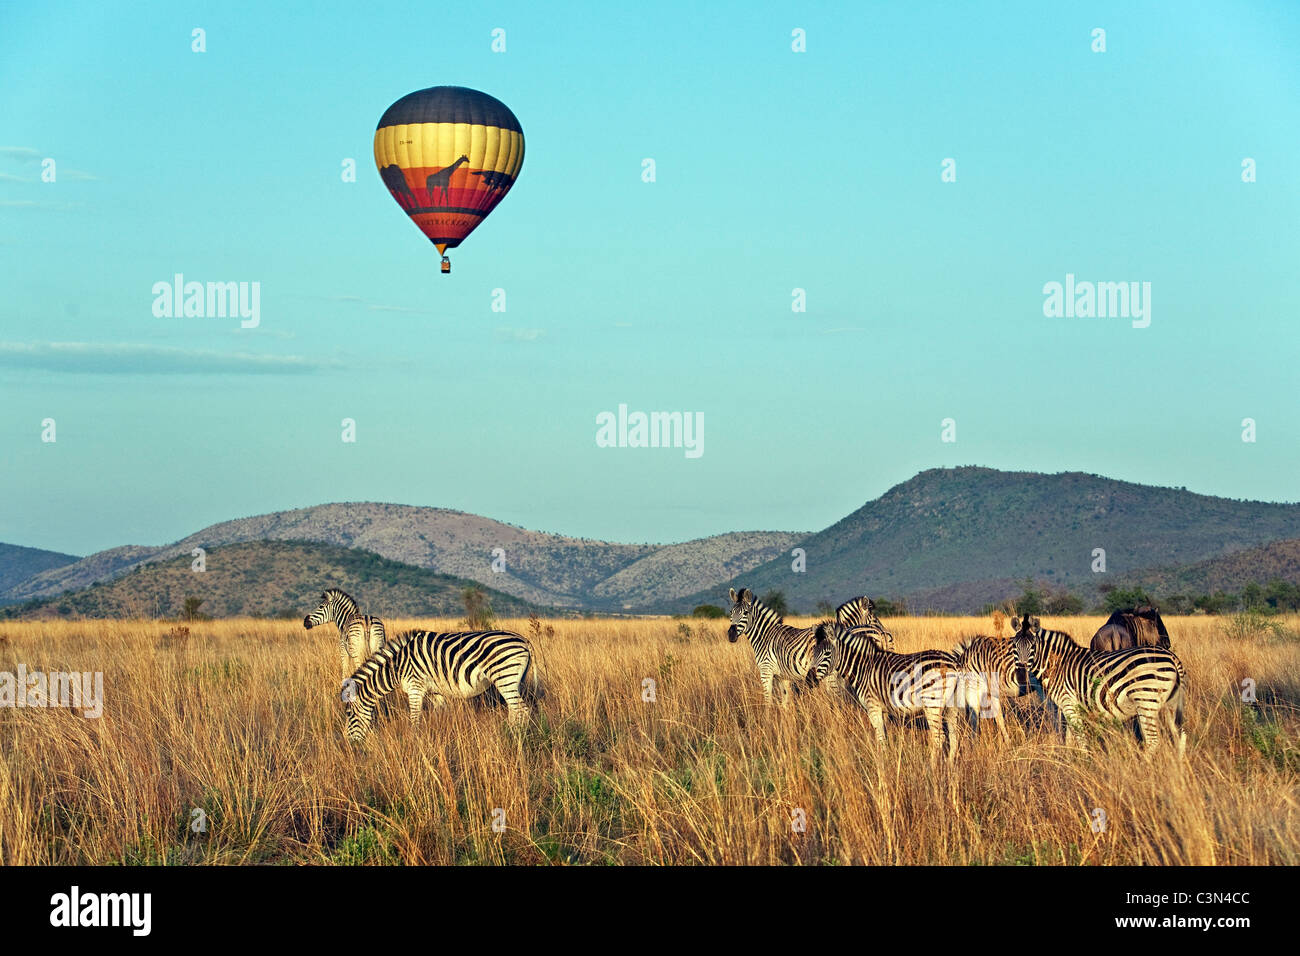 Sudáfrica, cerca de Rustenburg, el Parque Nacional Pilanesberg. Manada de cebras de Burchell, Equus burchelli). El balón. Foto de stock